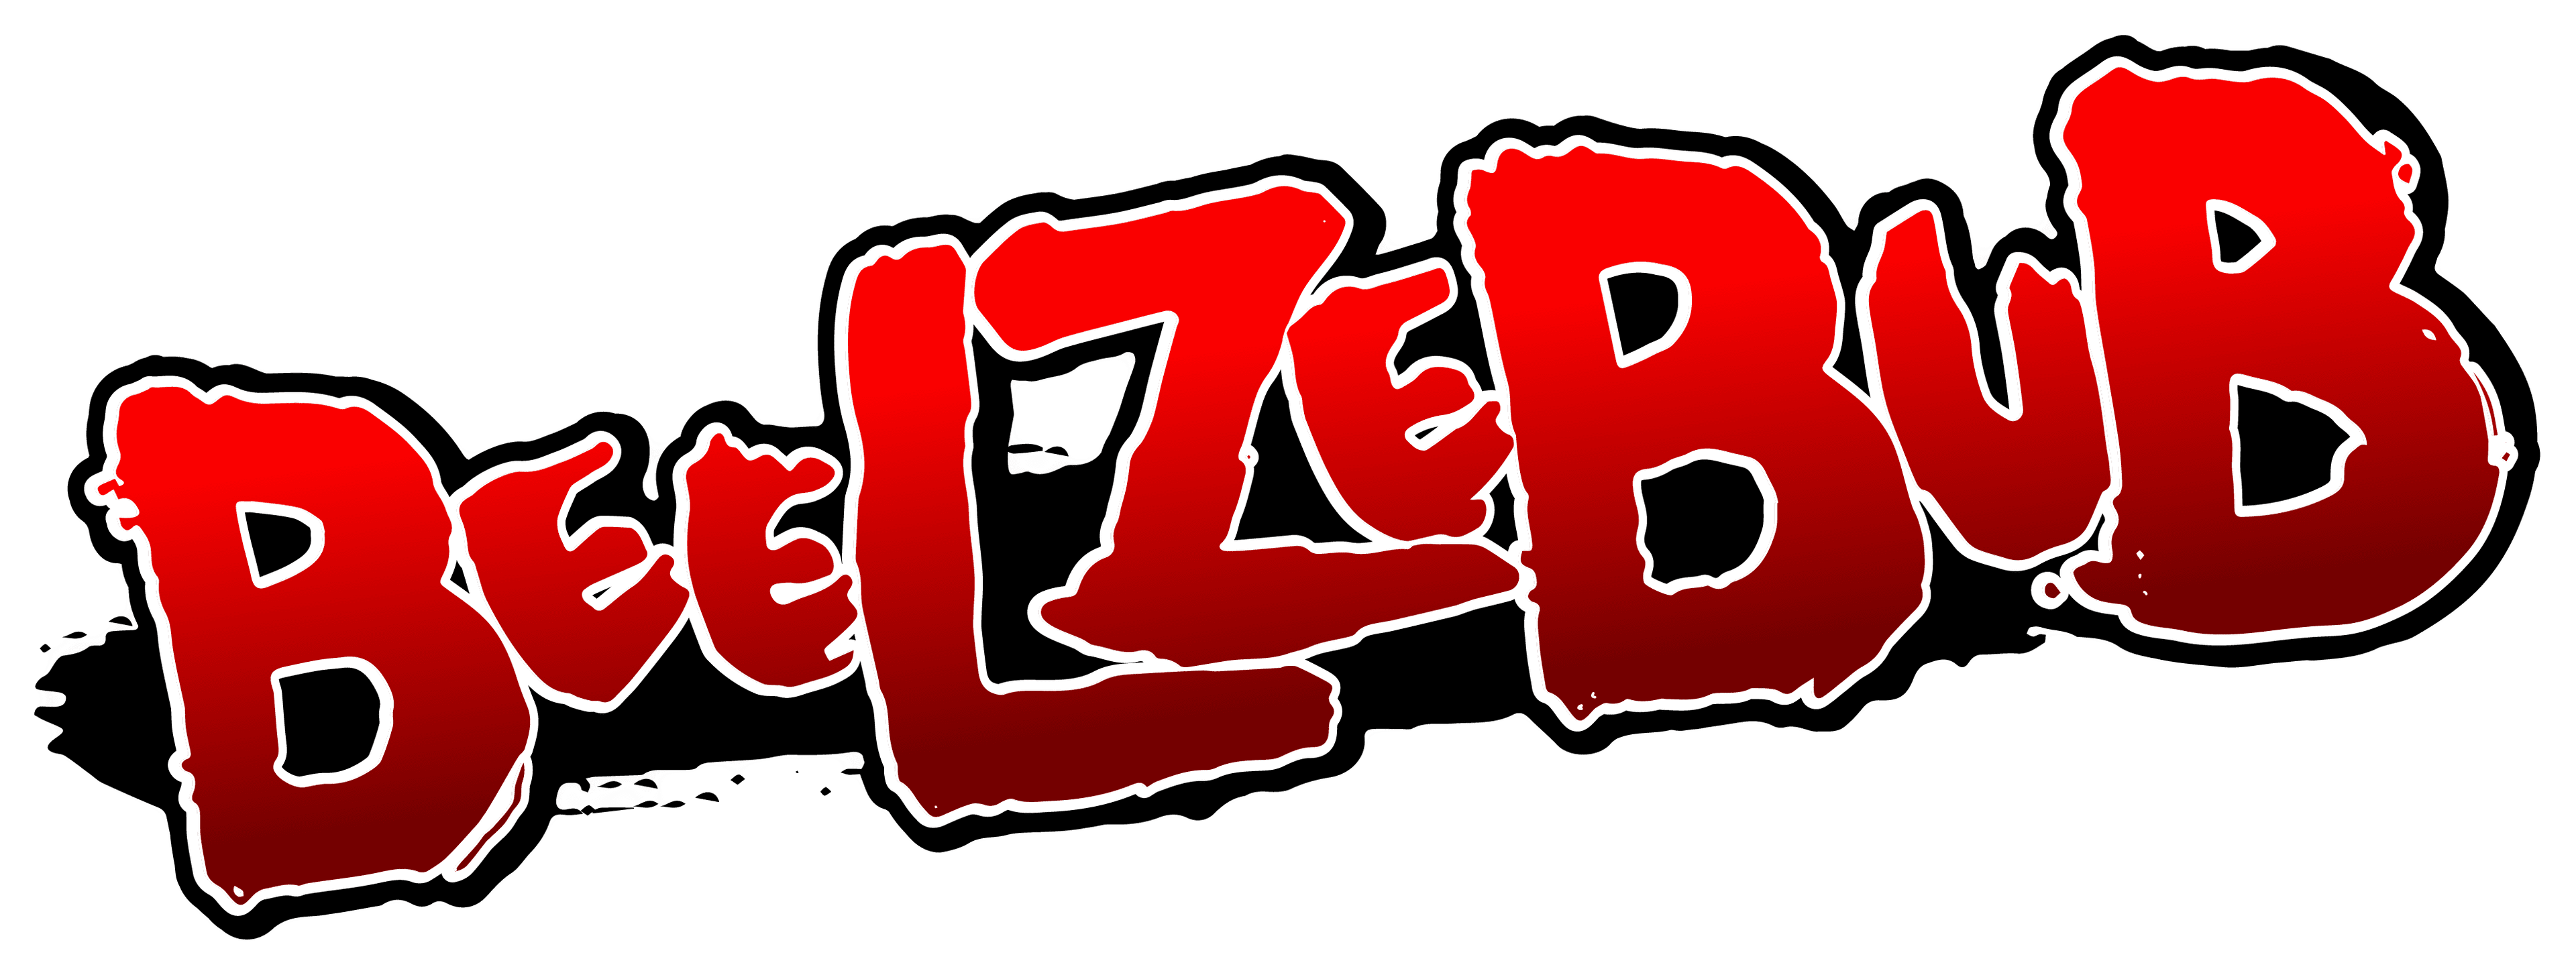 Beelzebub logo